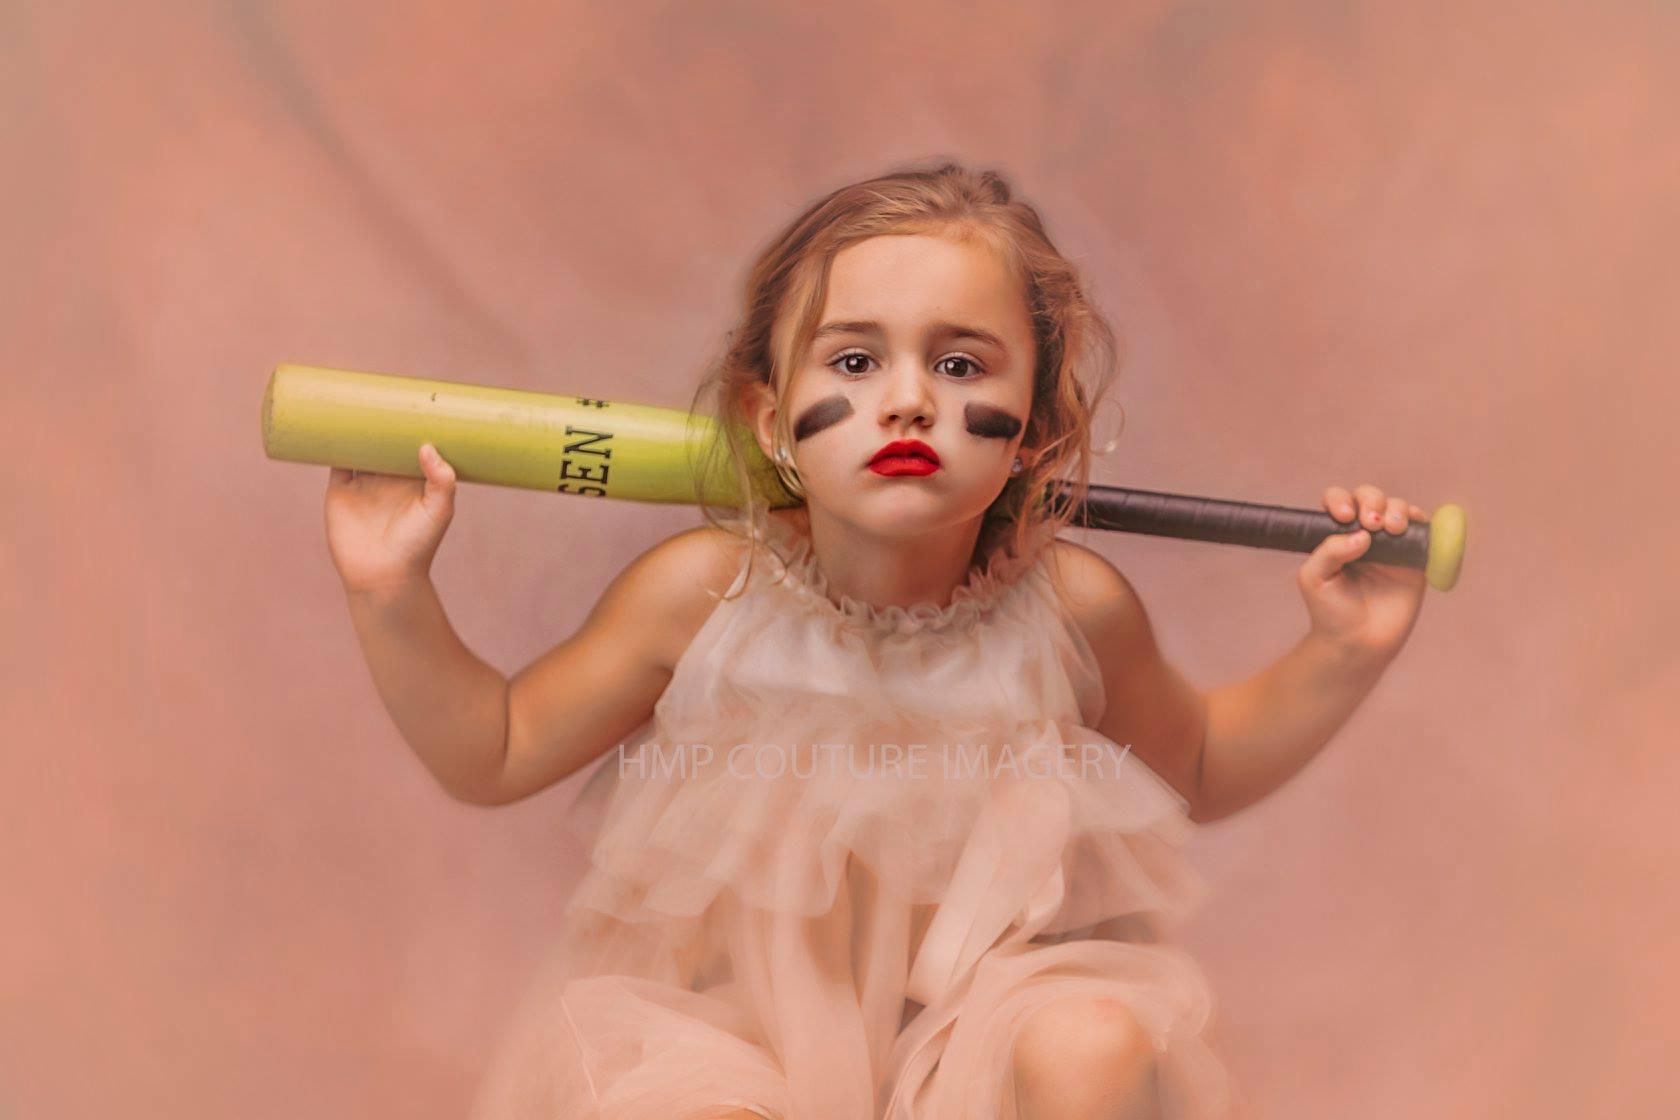 Вражаючі фото, які доводять, що дівчатка можуть бути одночасно принцесами та спортсменками